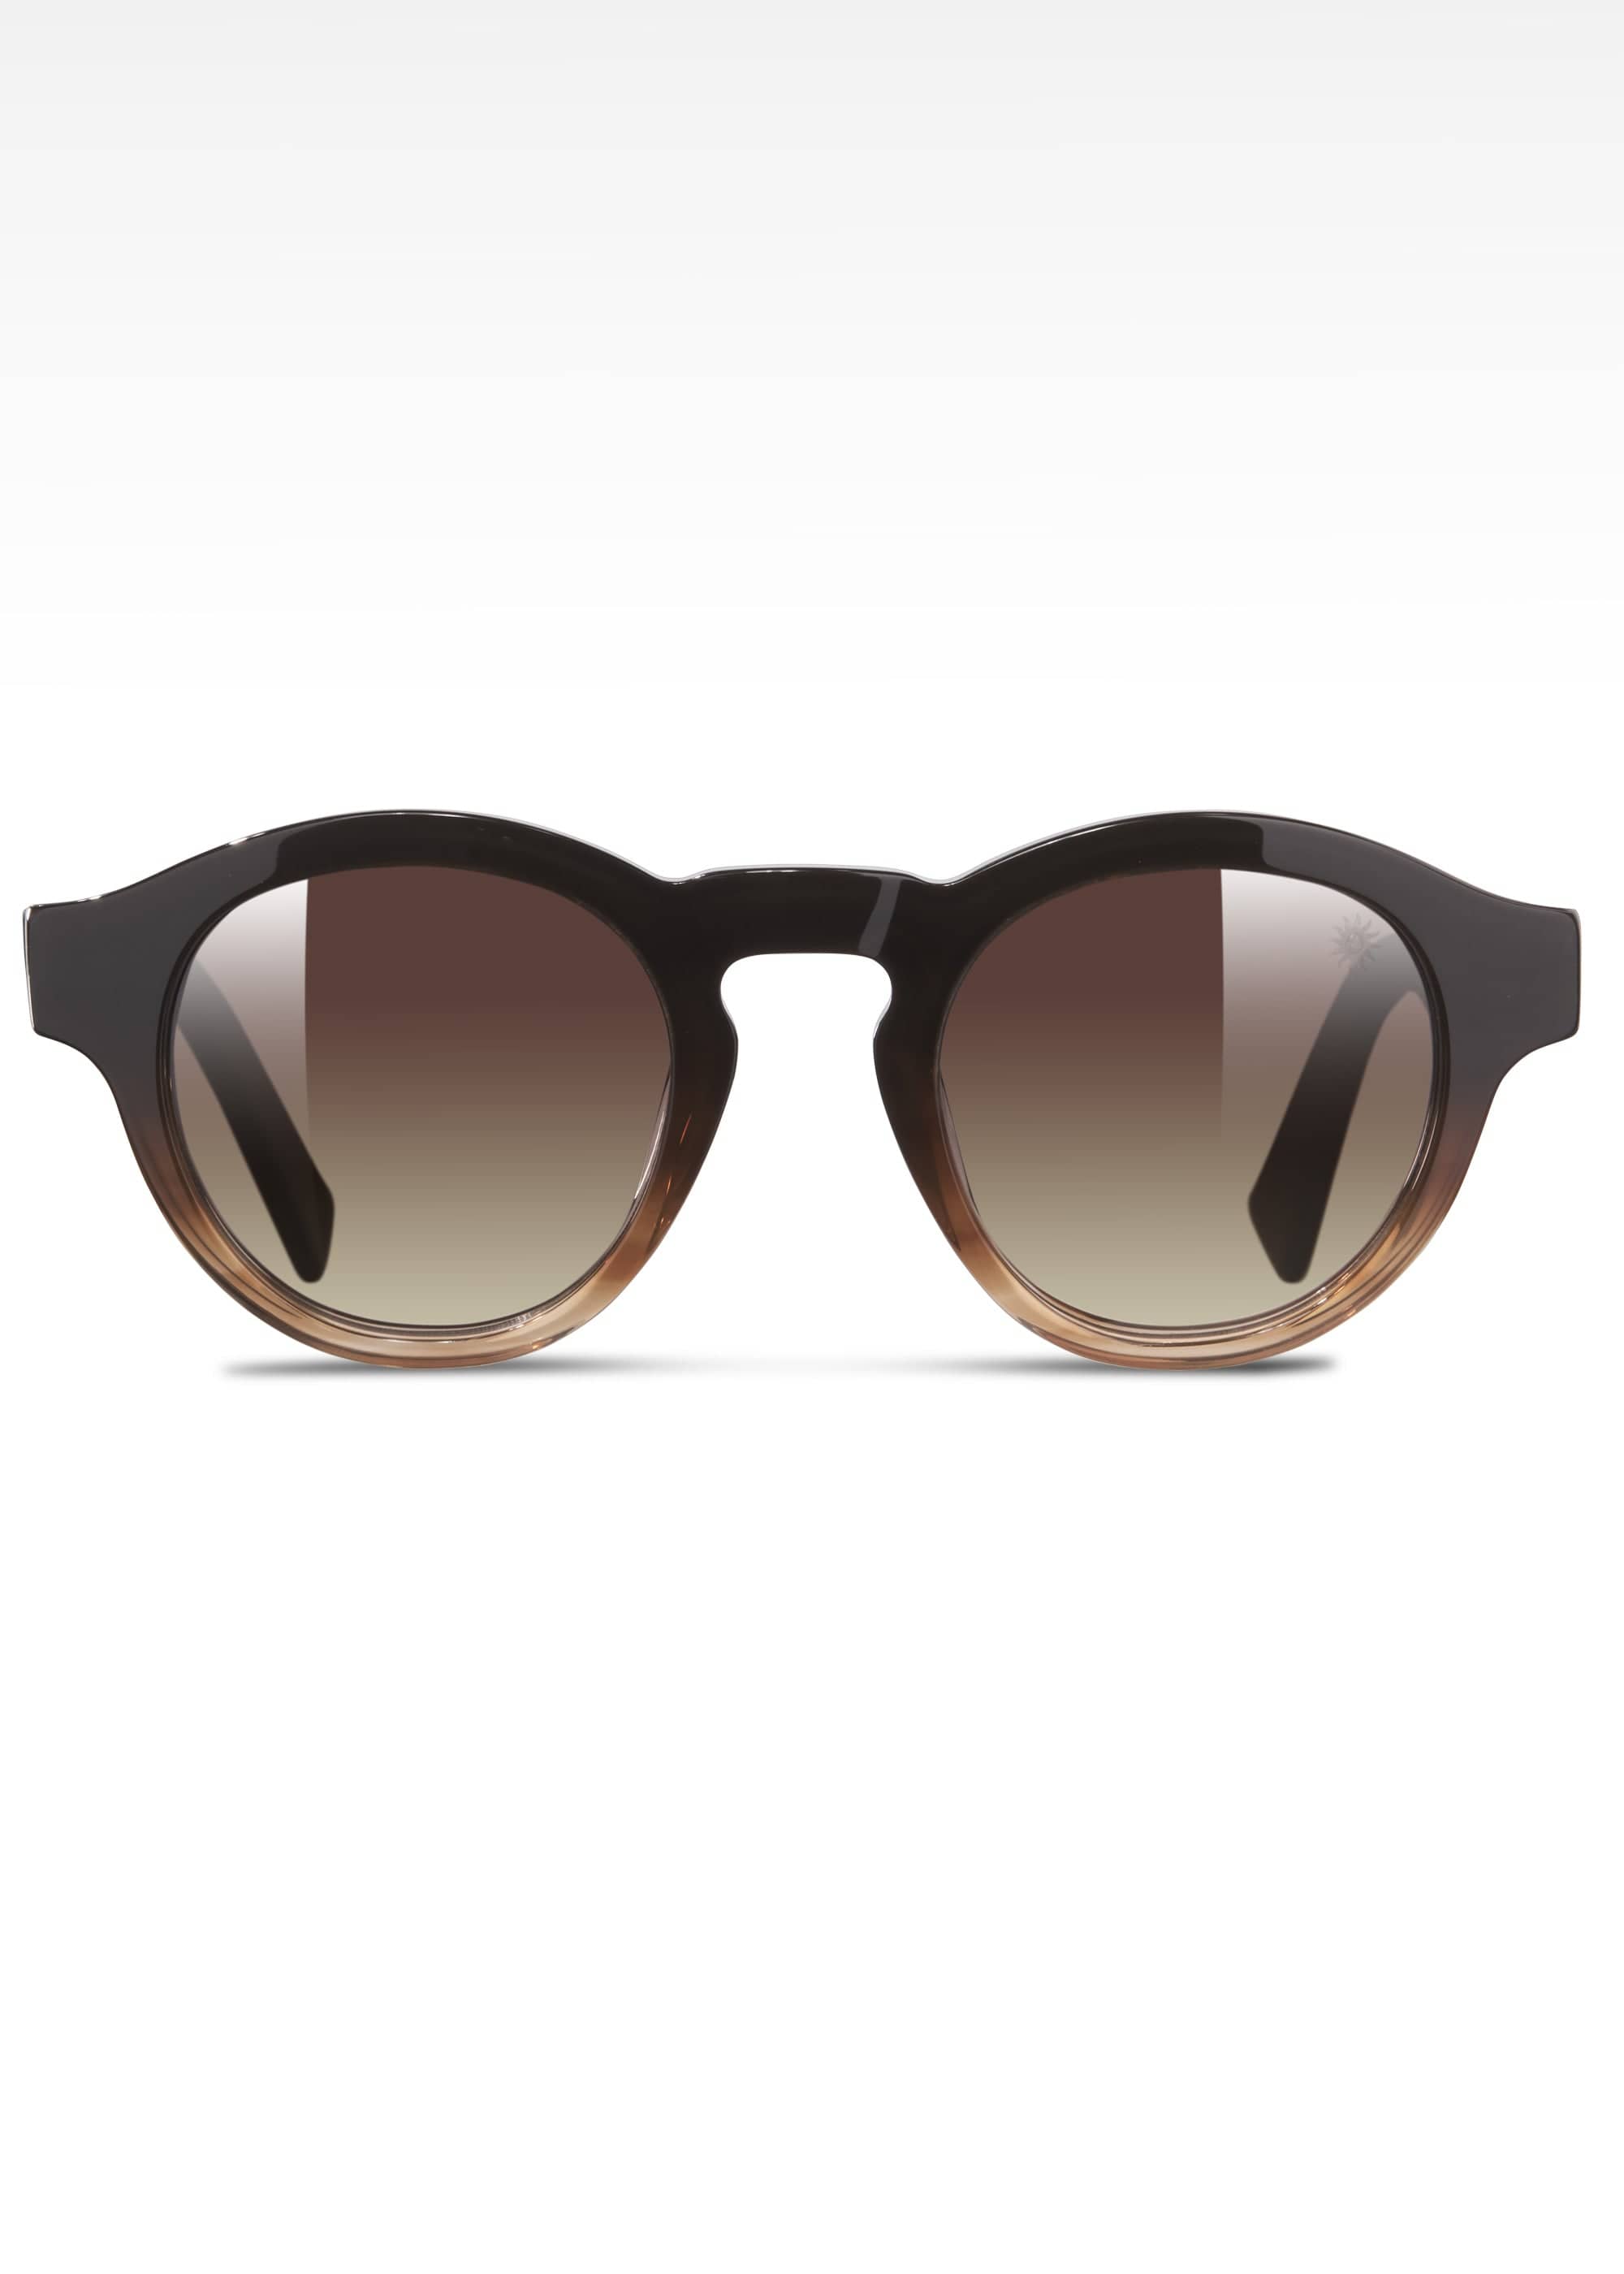 Sandbanks Portofino Sunglasses - Sunset